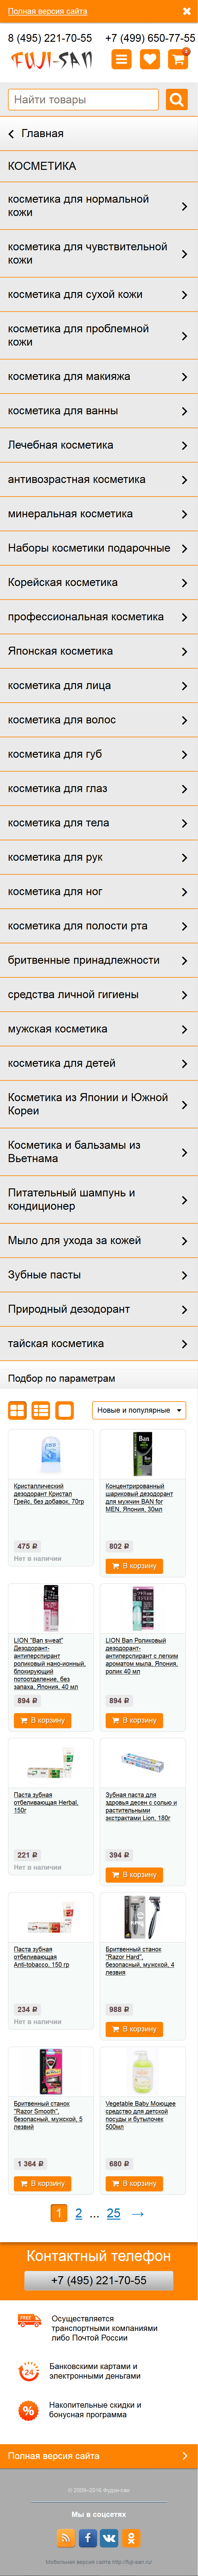 Страница категории сайта после внедрения нового дизайна для мобильной версии